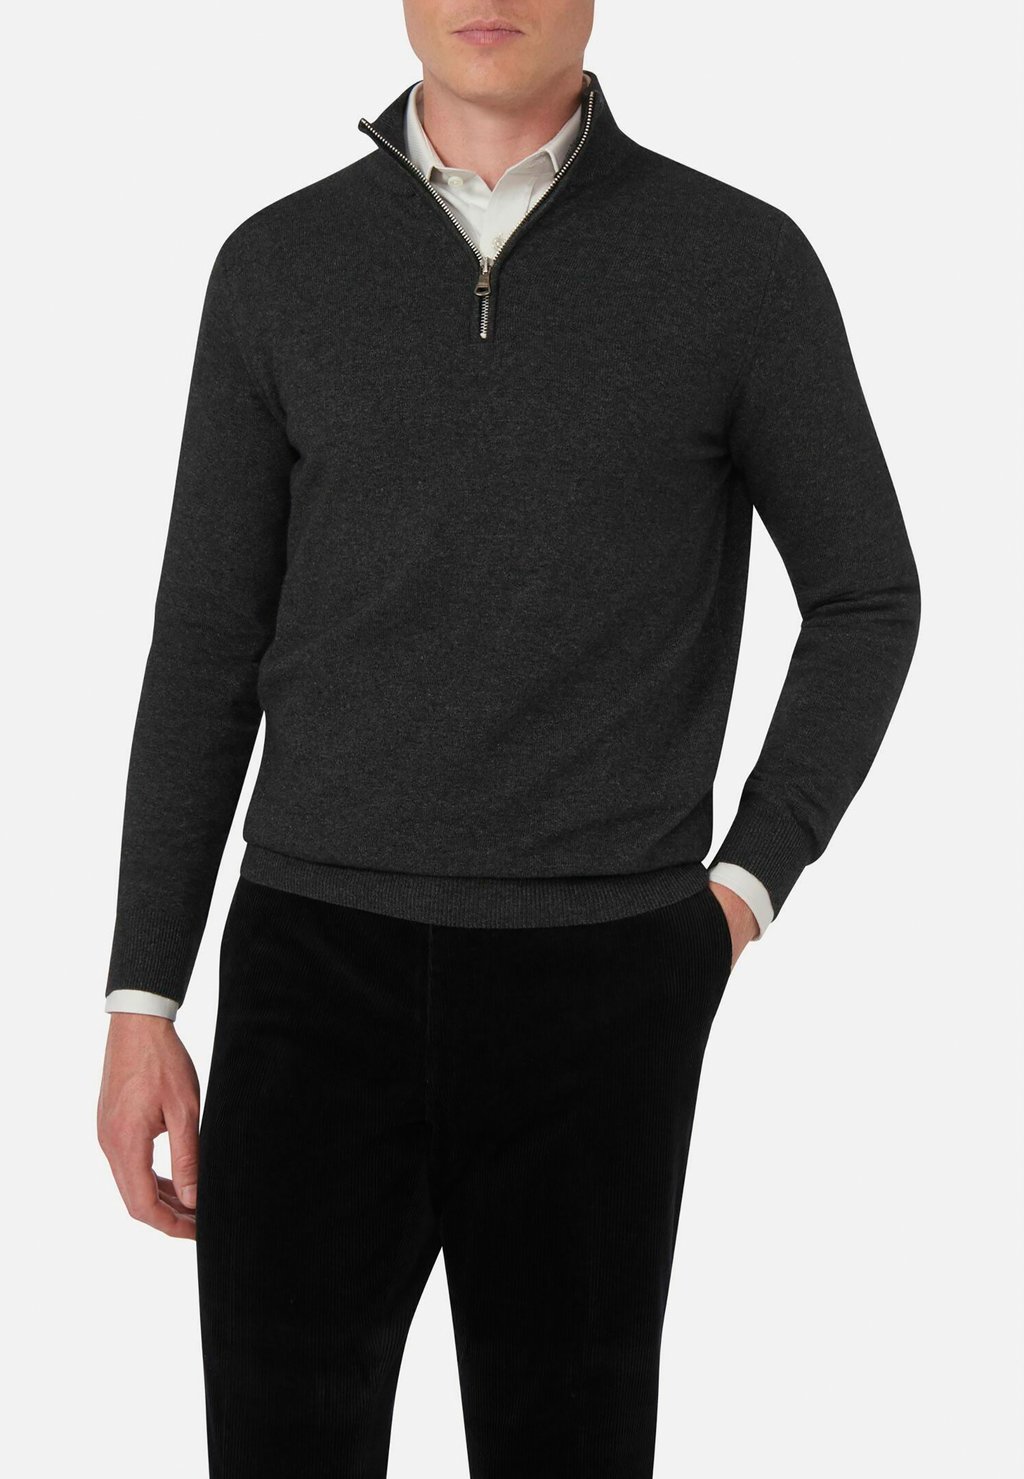 вязаный свитер patton oscar jacobson цвет dark grey Вязаный свитер PATTON Oscar Jacobson, цвет dark grey